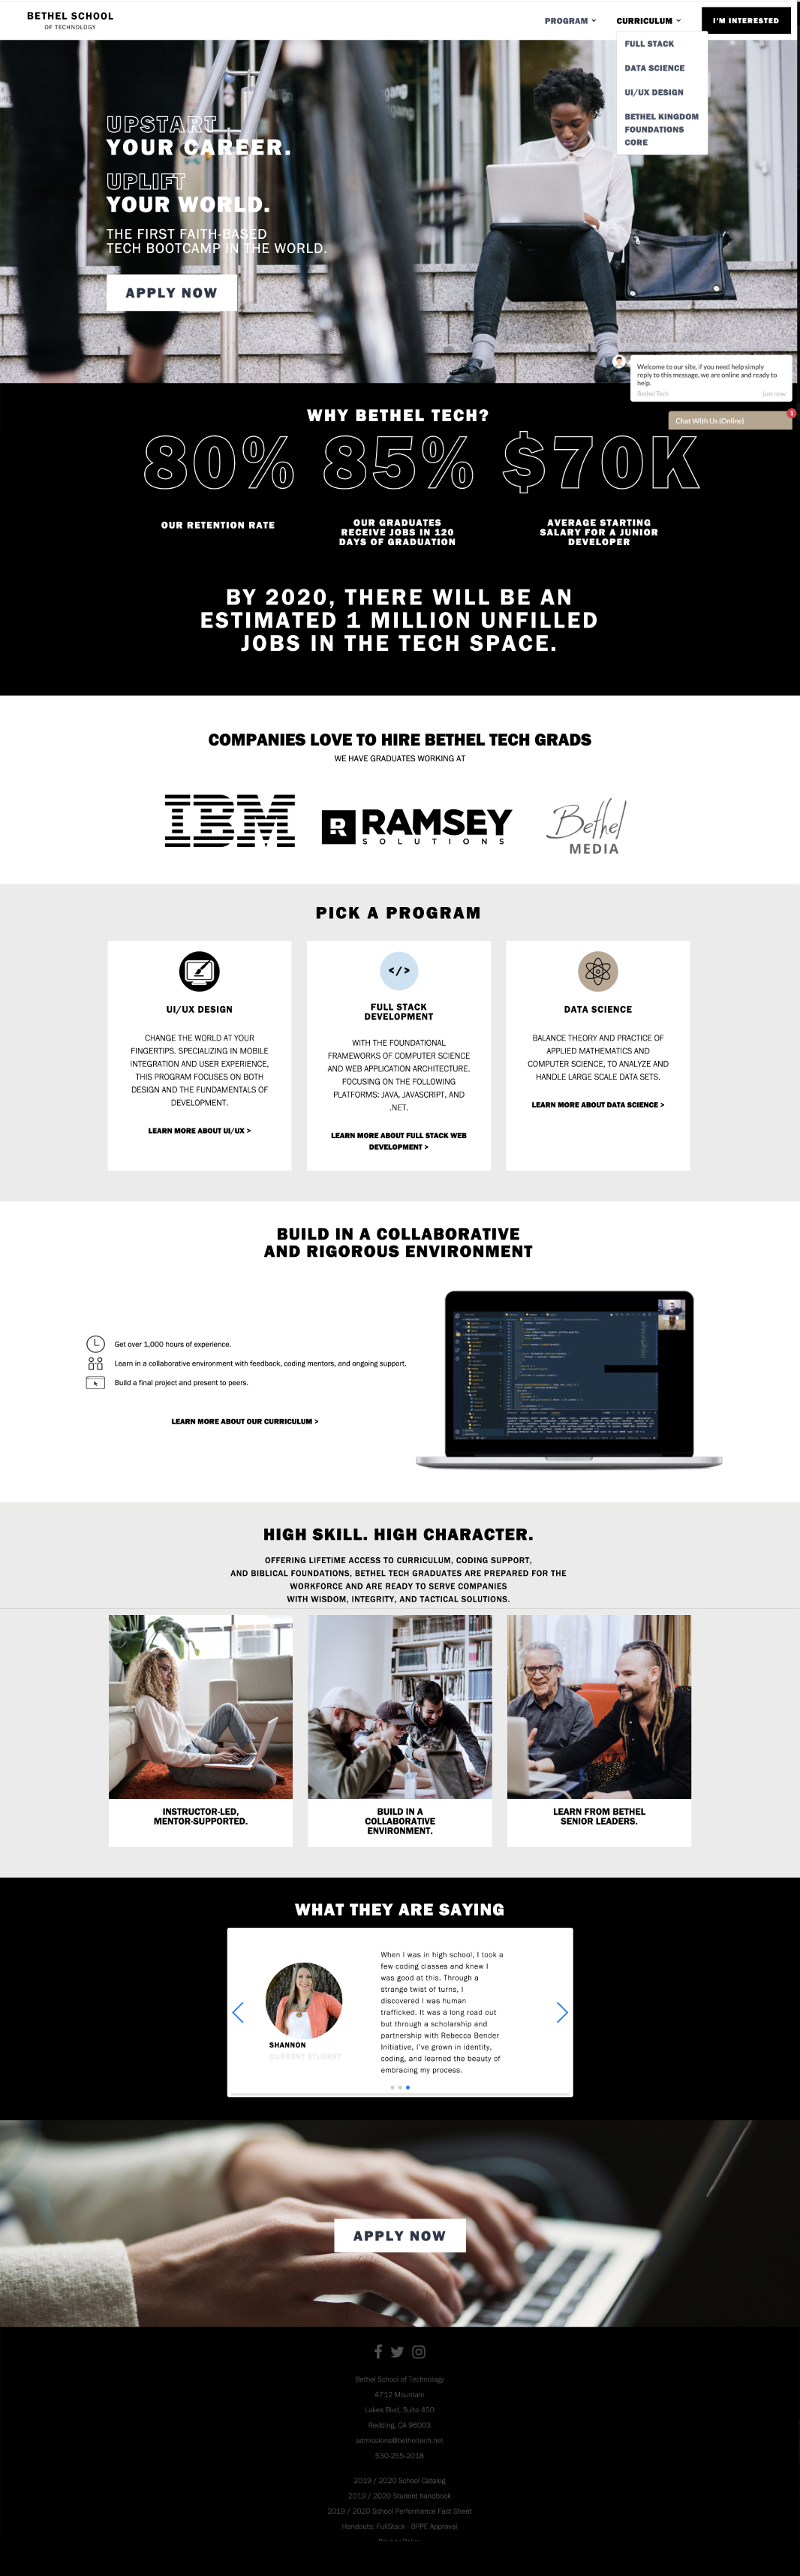 bethel school of technology website redesign